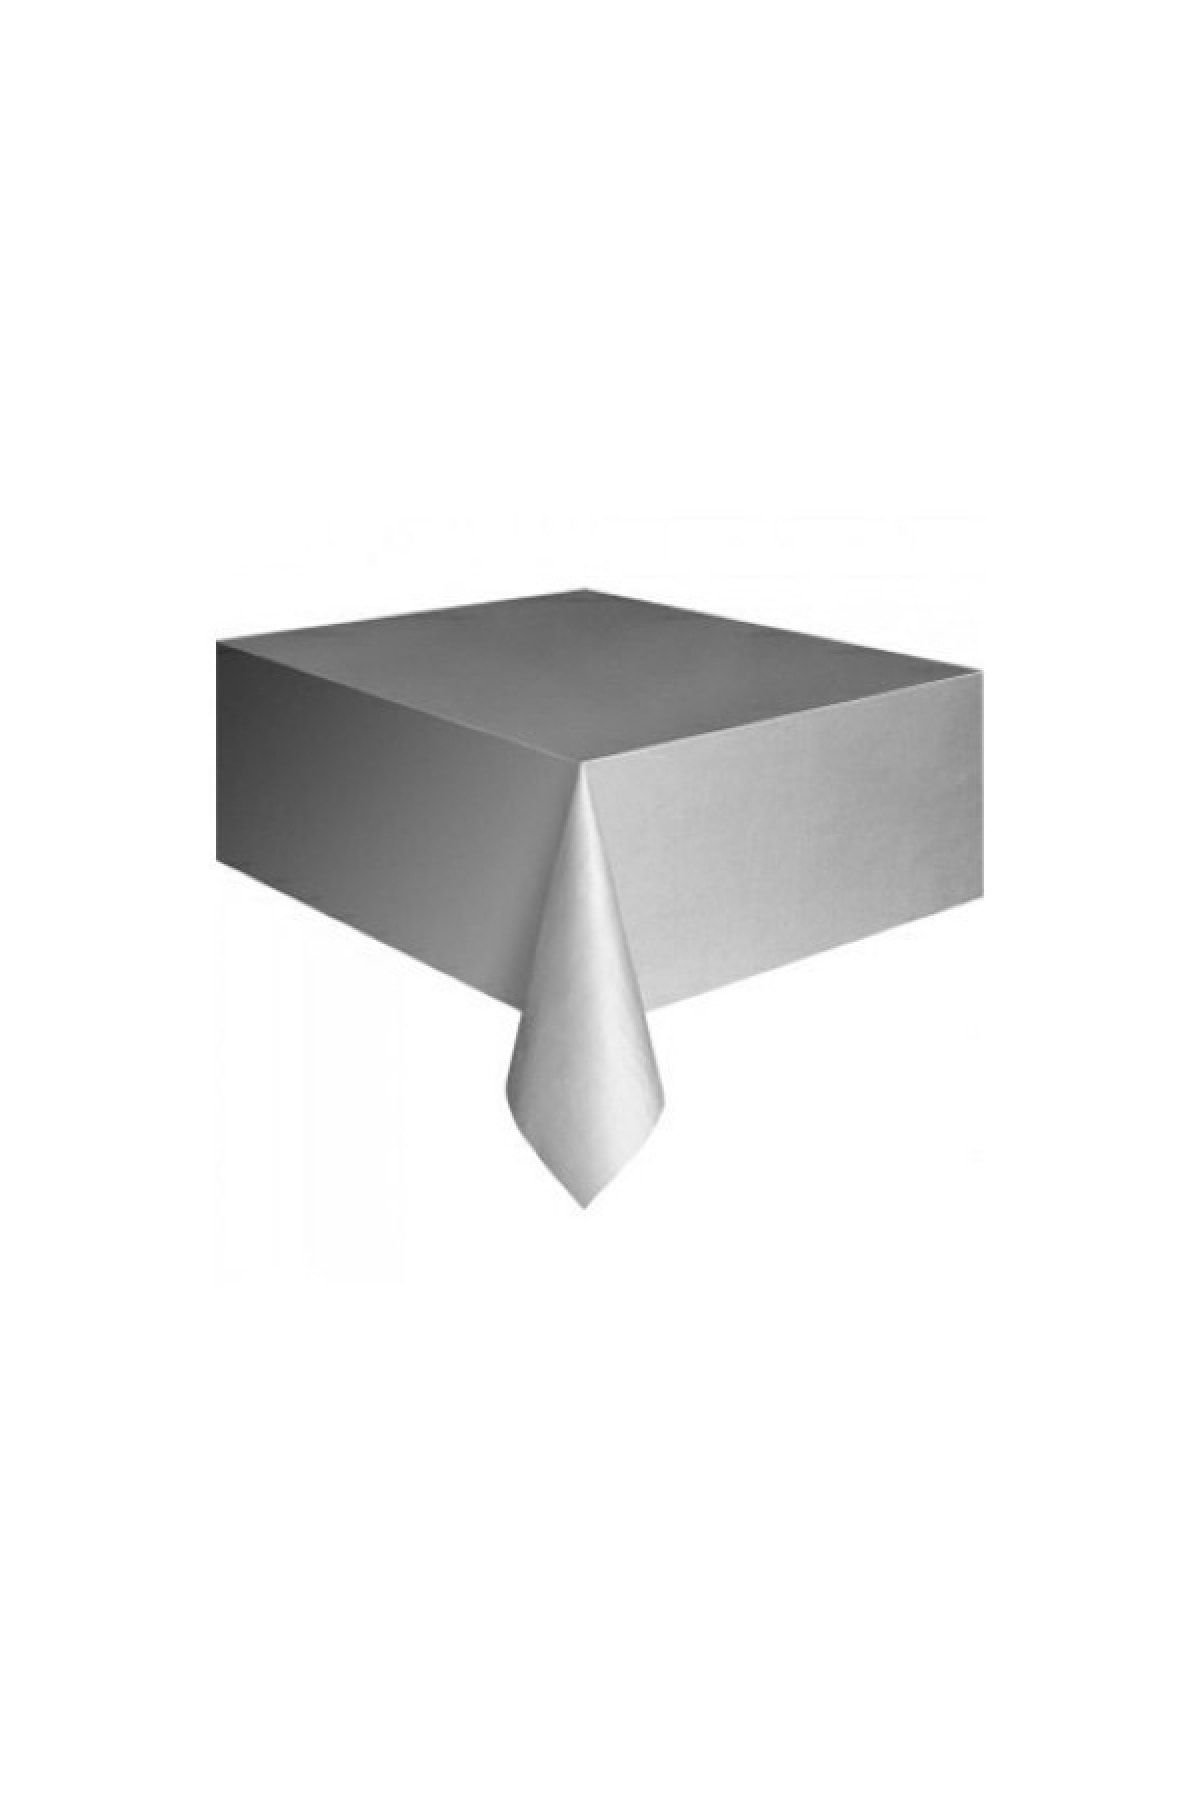 Cansüs Plastik Masa Örtüsü Gümüş - 120x180cm